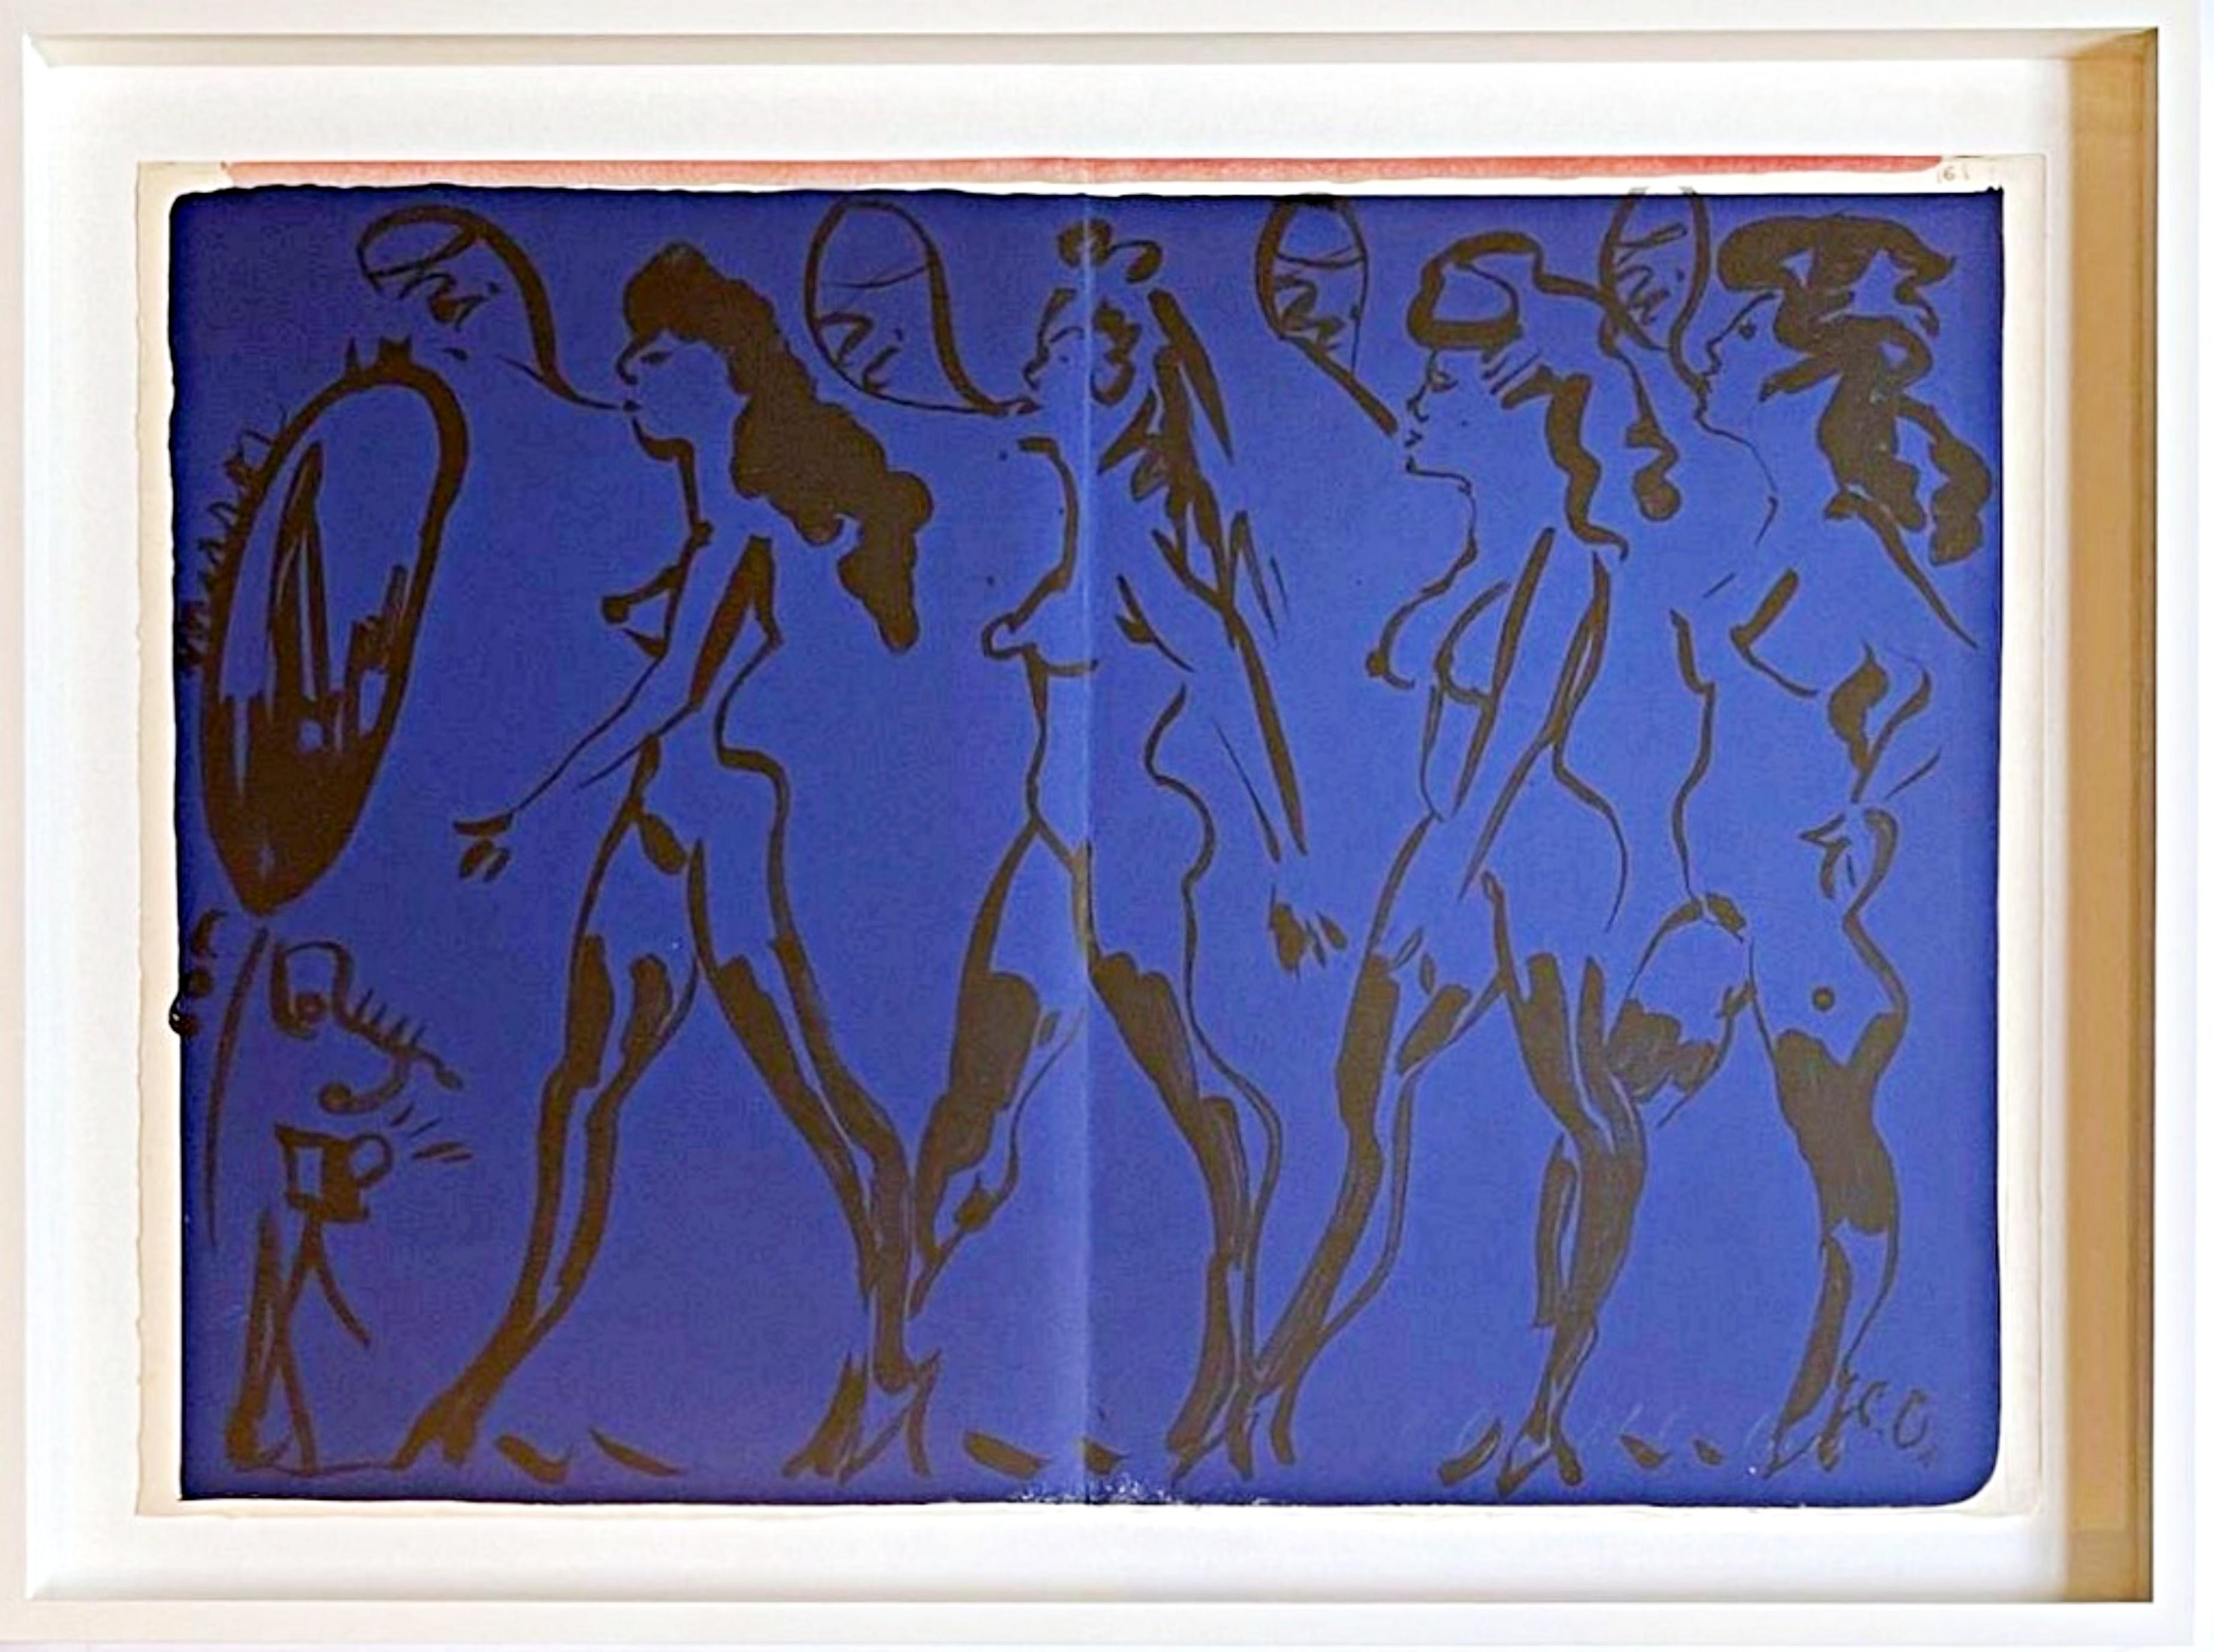 Nude Print Claes Oldenburg - Parade de femmes, de luxe, signé à la main, 85/100 1 Cent Life Portfolio, encadré